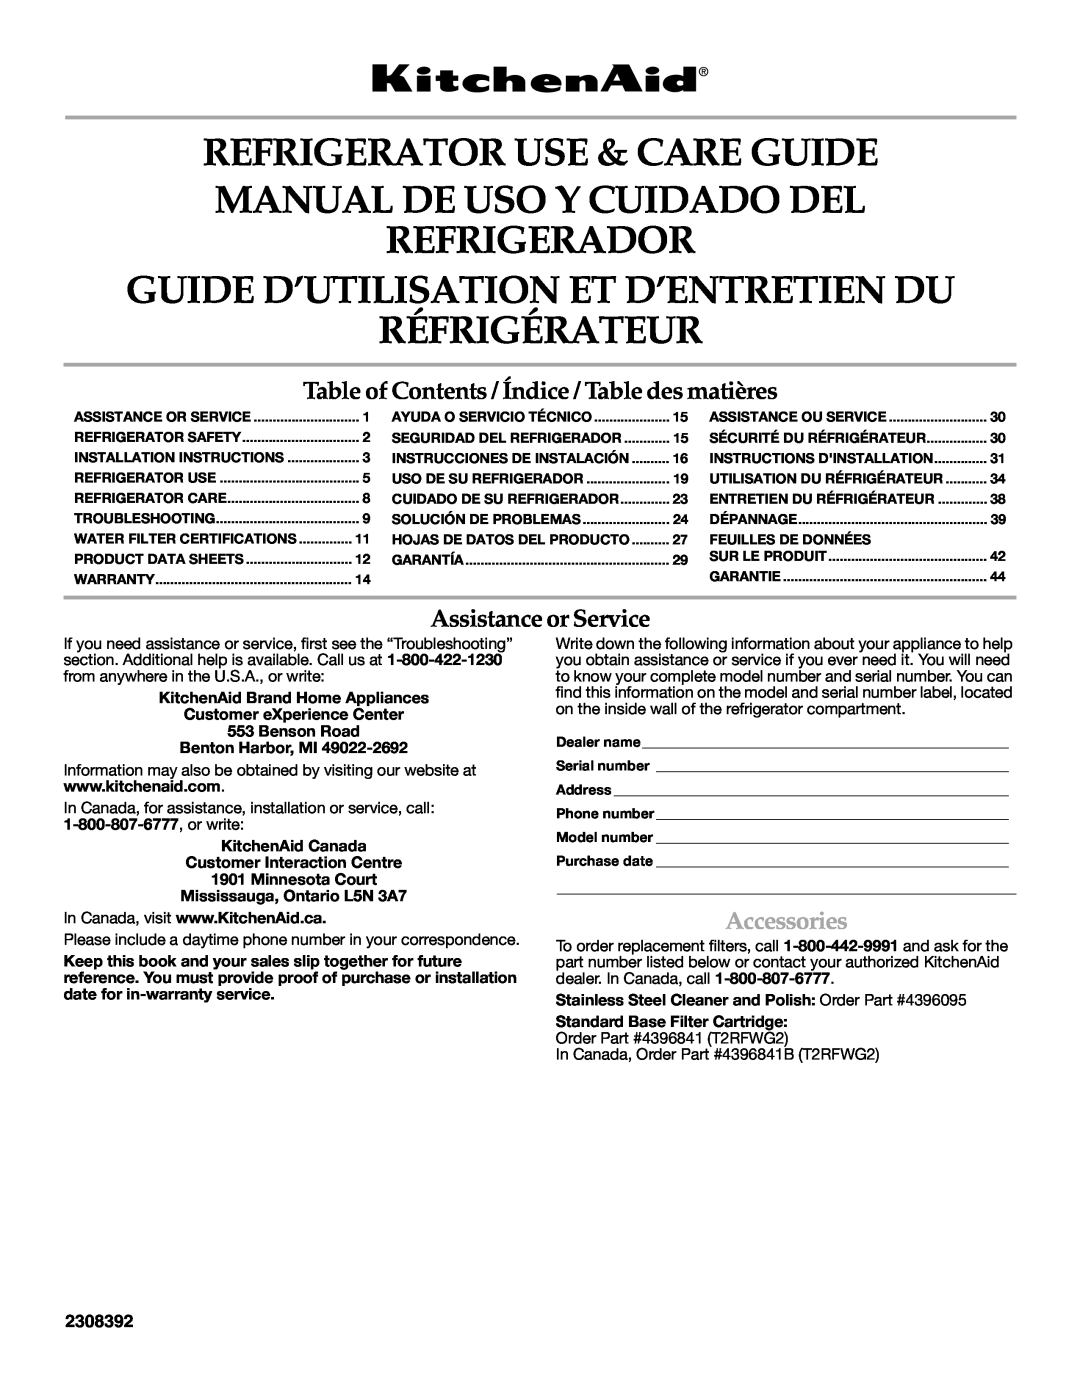 KitchenAid KSRF25FRBL00 warranty Refrigerator Use & Care Guide Manual De Uso Y Cuidado Del, Assistance or Service, 2308392 